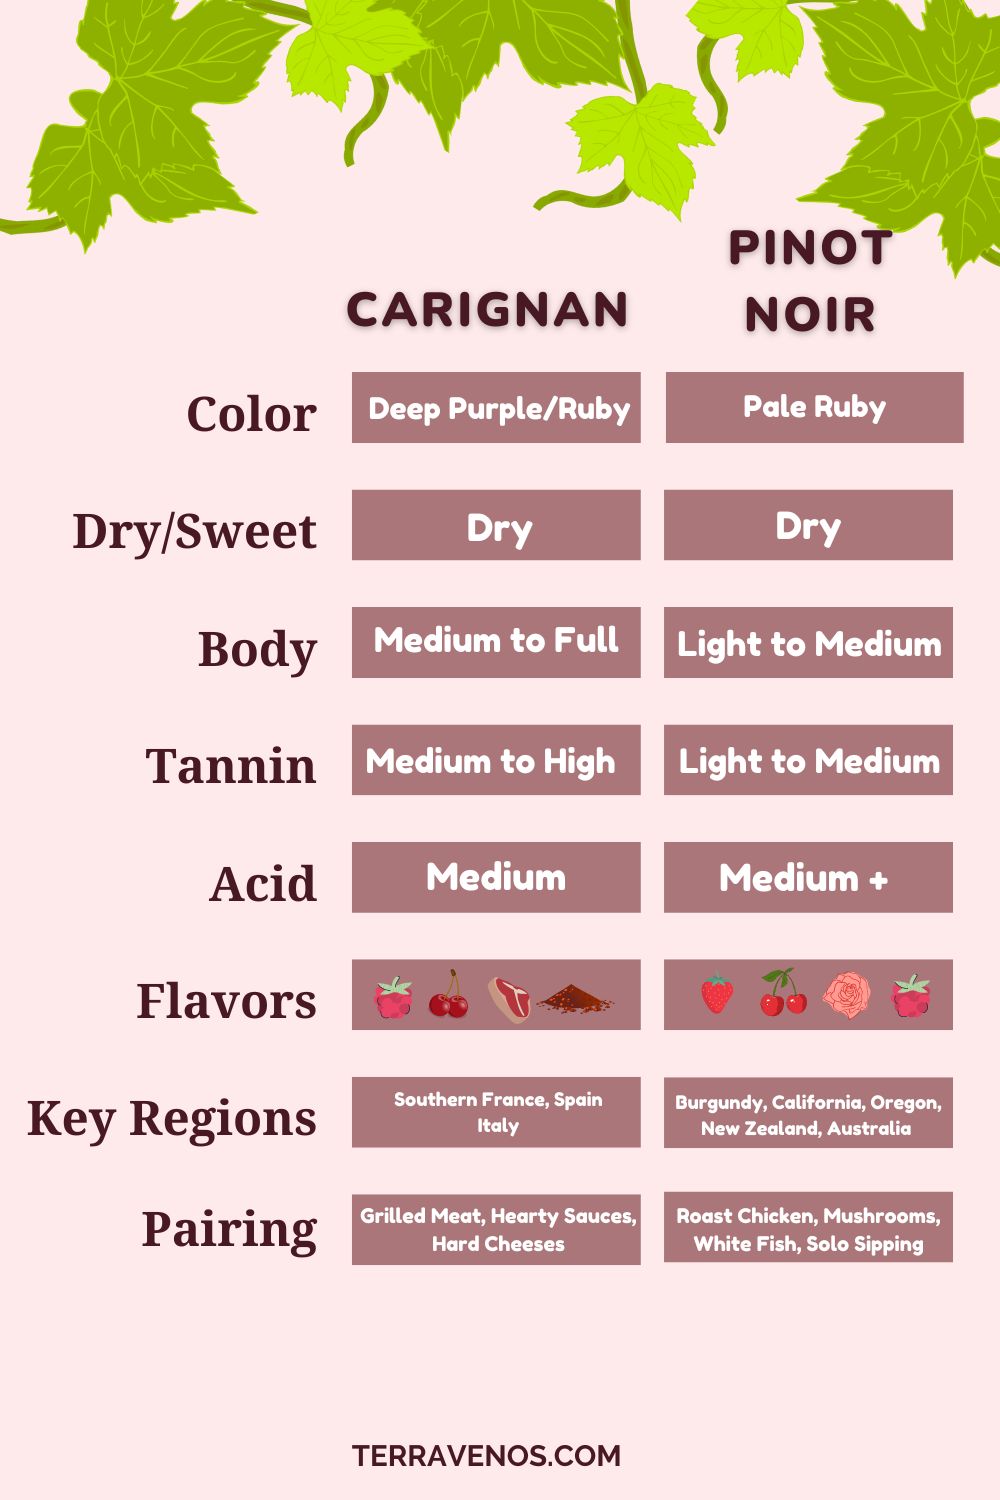 carignan-vs-pinot-noir-comparison-infographic